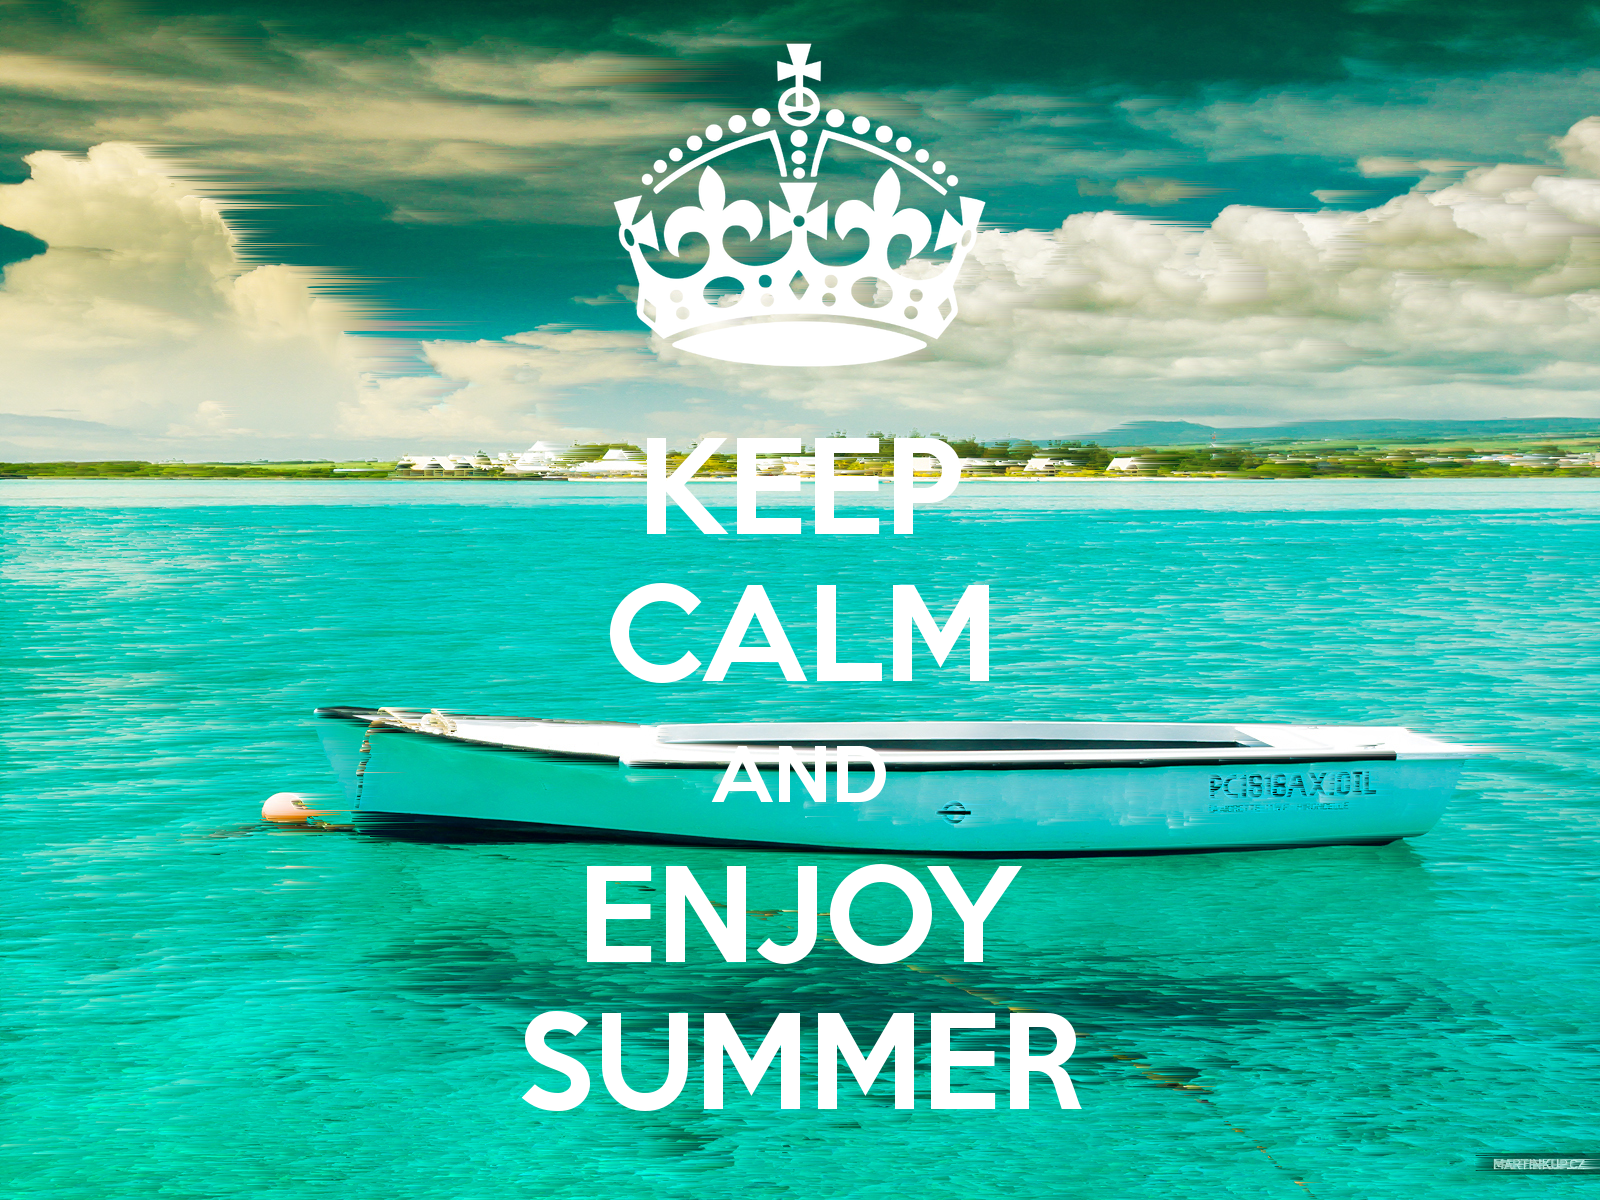 KEEP CALM AND ENJOY SUMMER. Keep calm, Enjoy summer, Summer